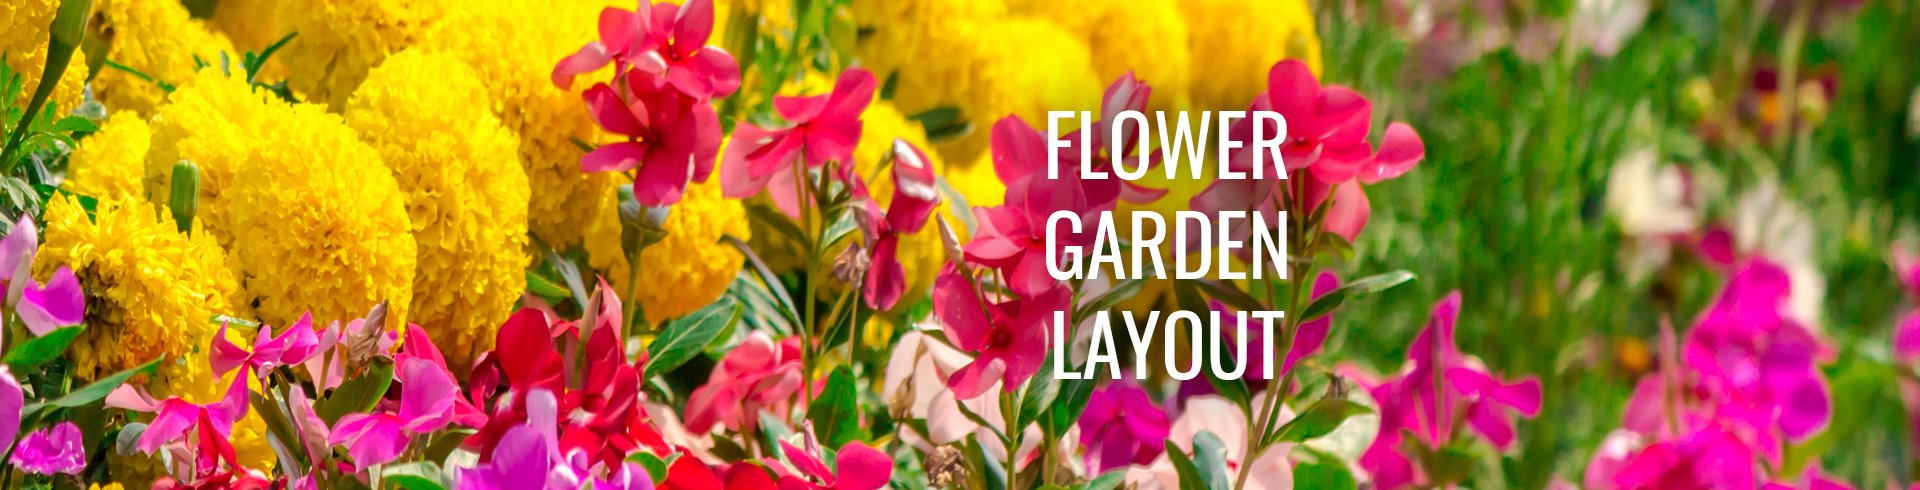 flower garden layout | rc willey blog